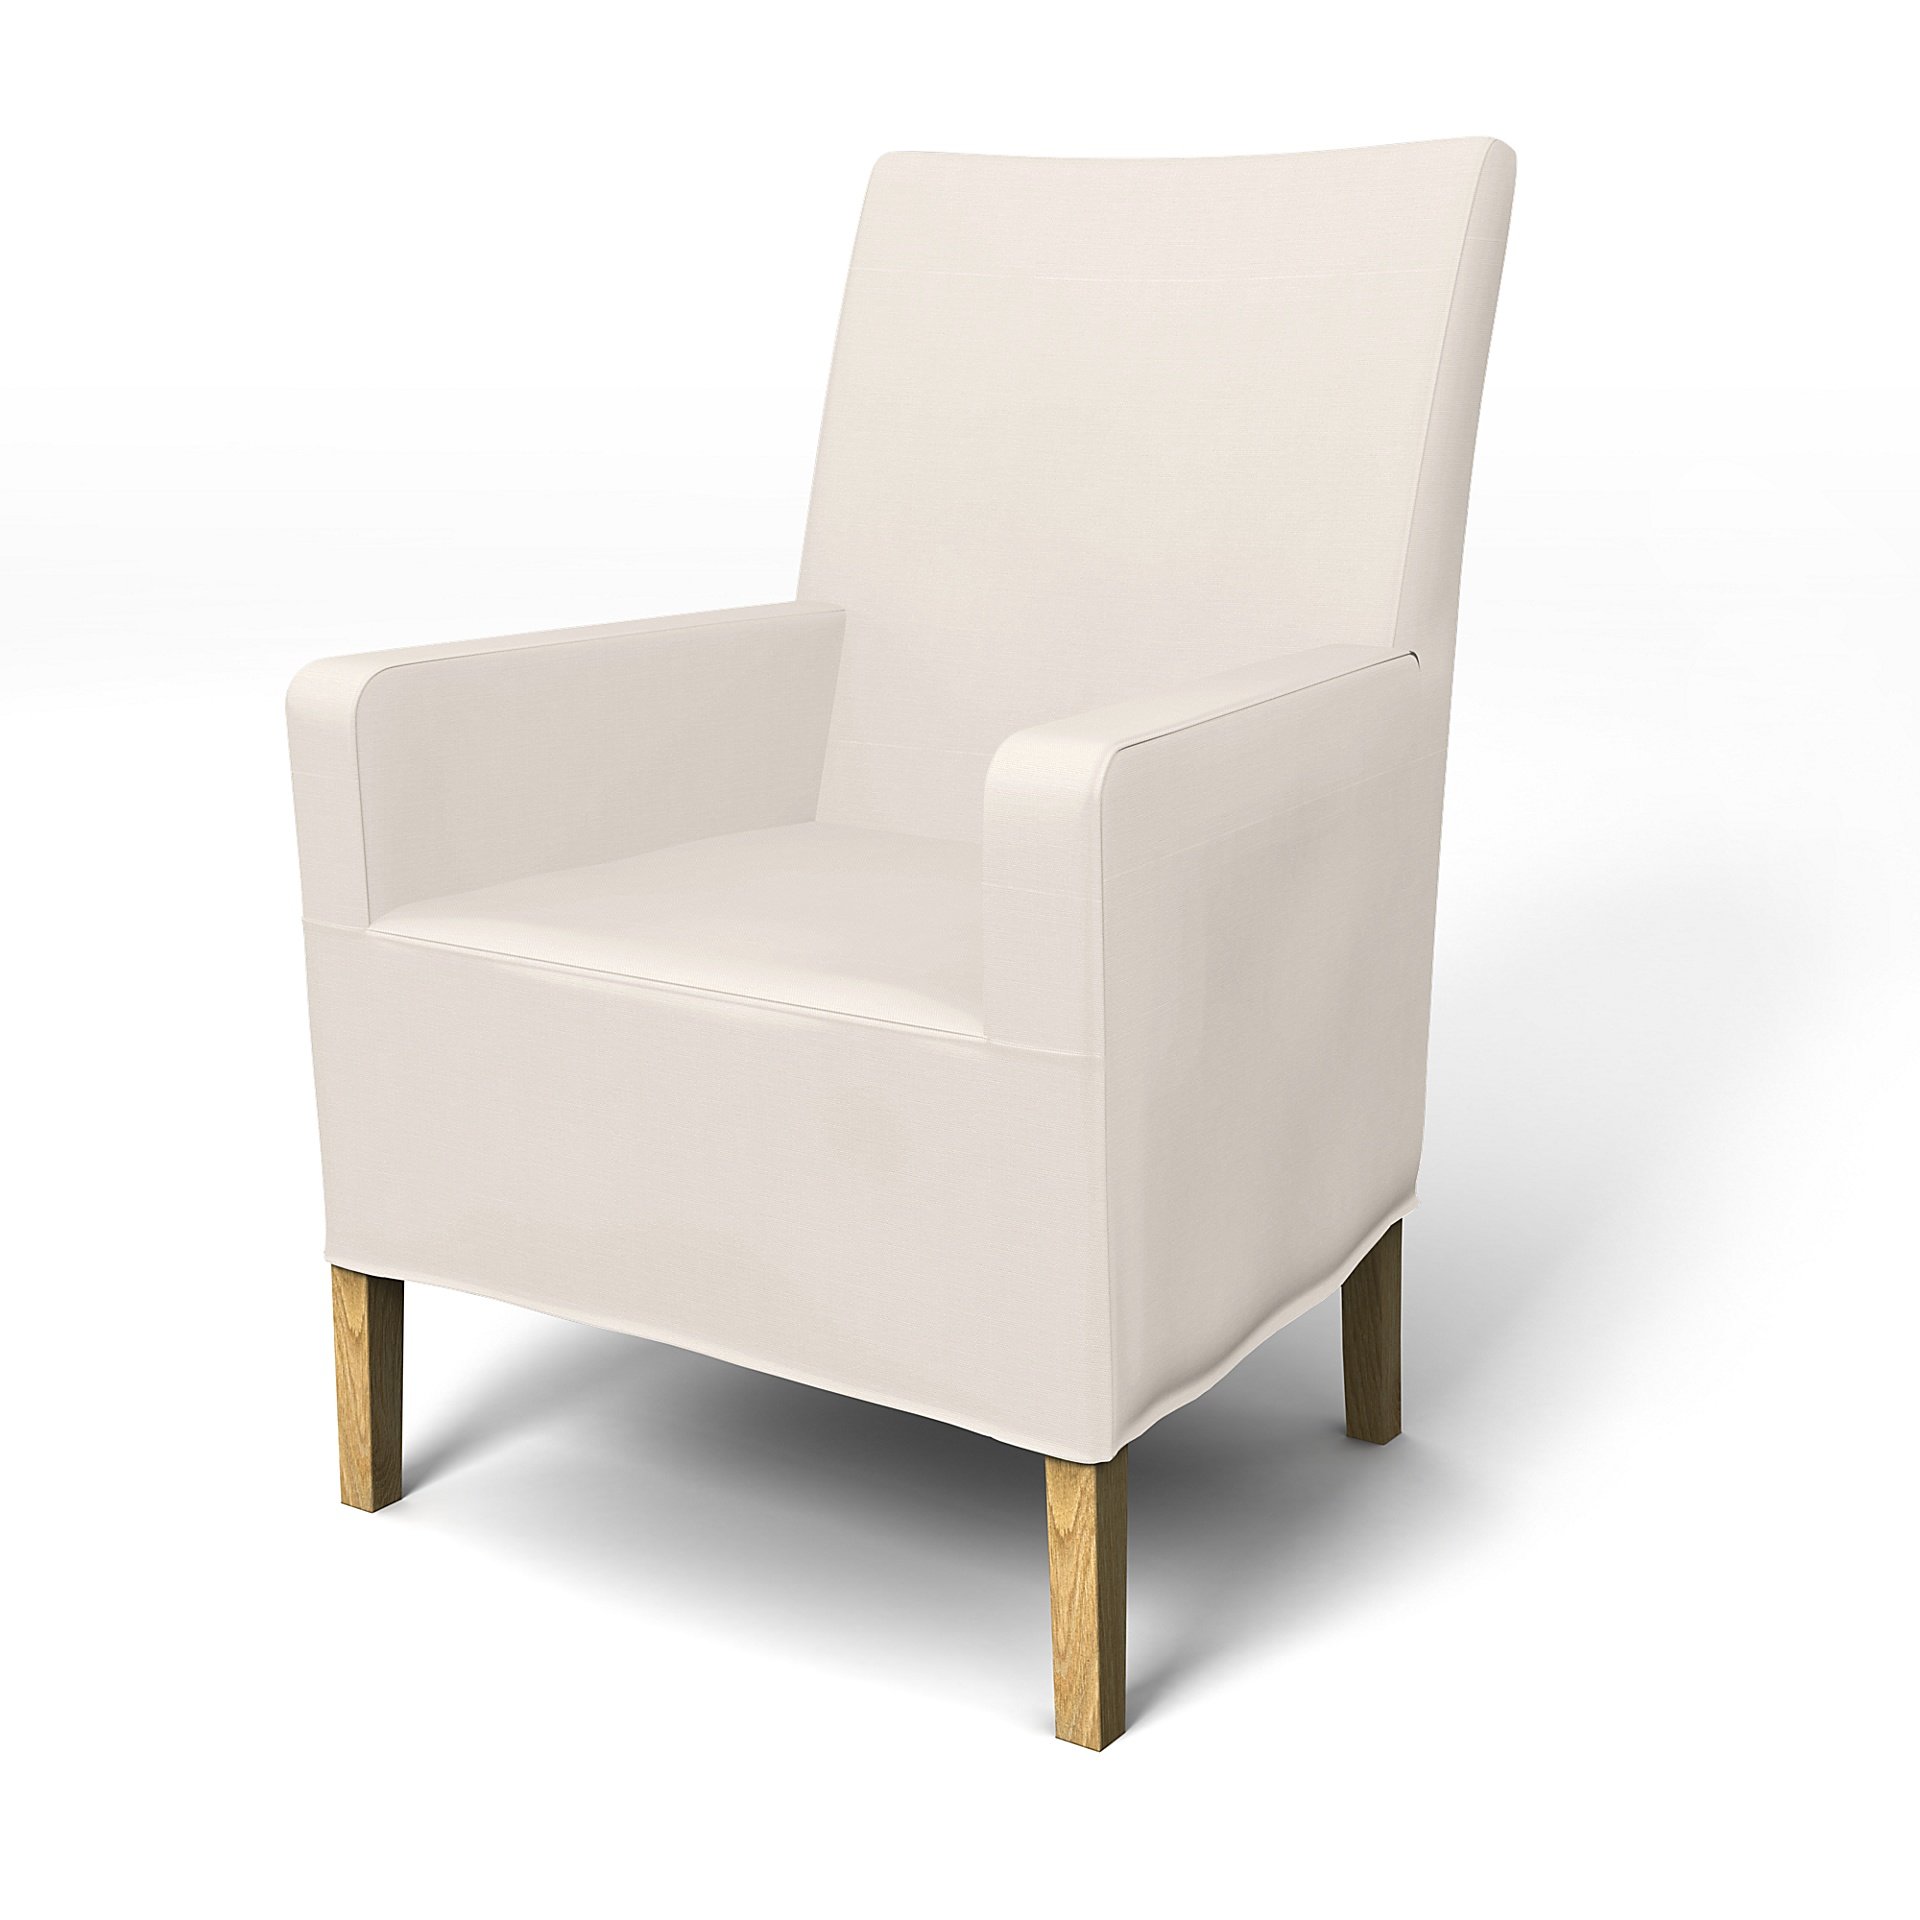 IKEA - Henriksdal, Chair cover w/ armrest, medium length skirt, Soft White, Cotton - Bemz